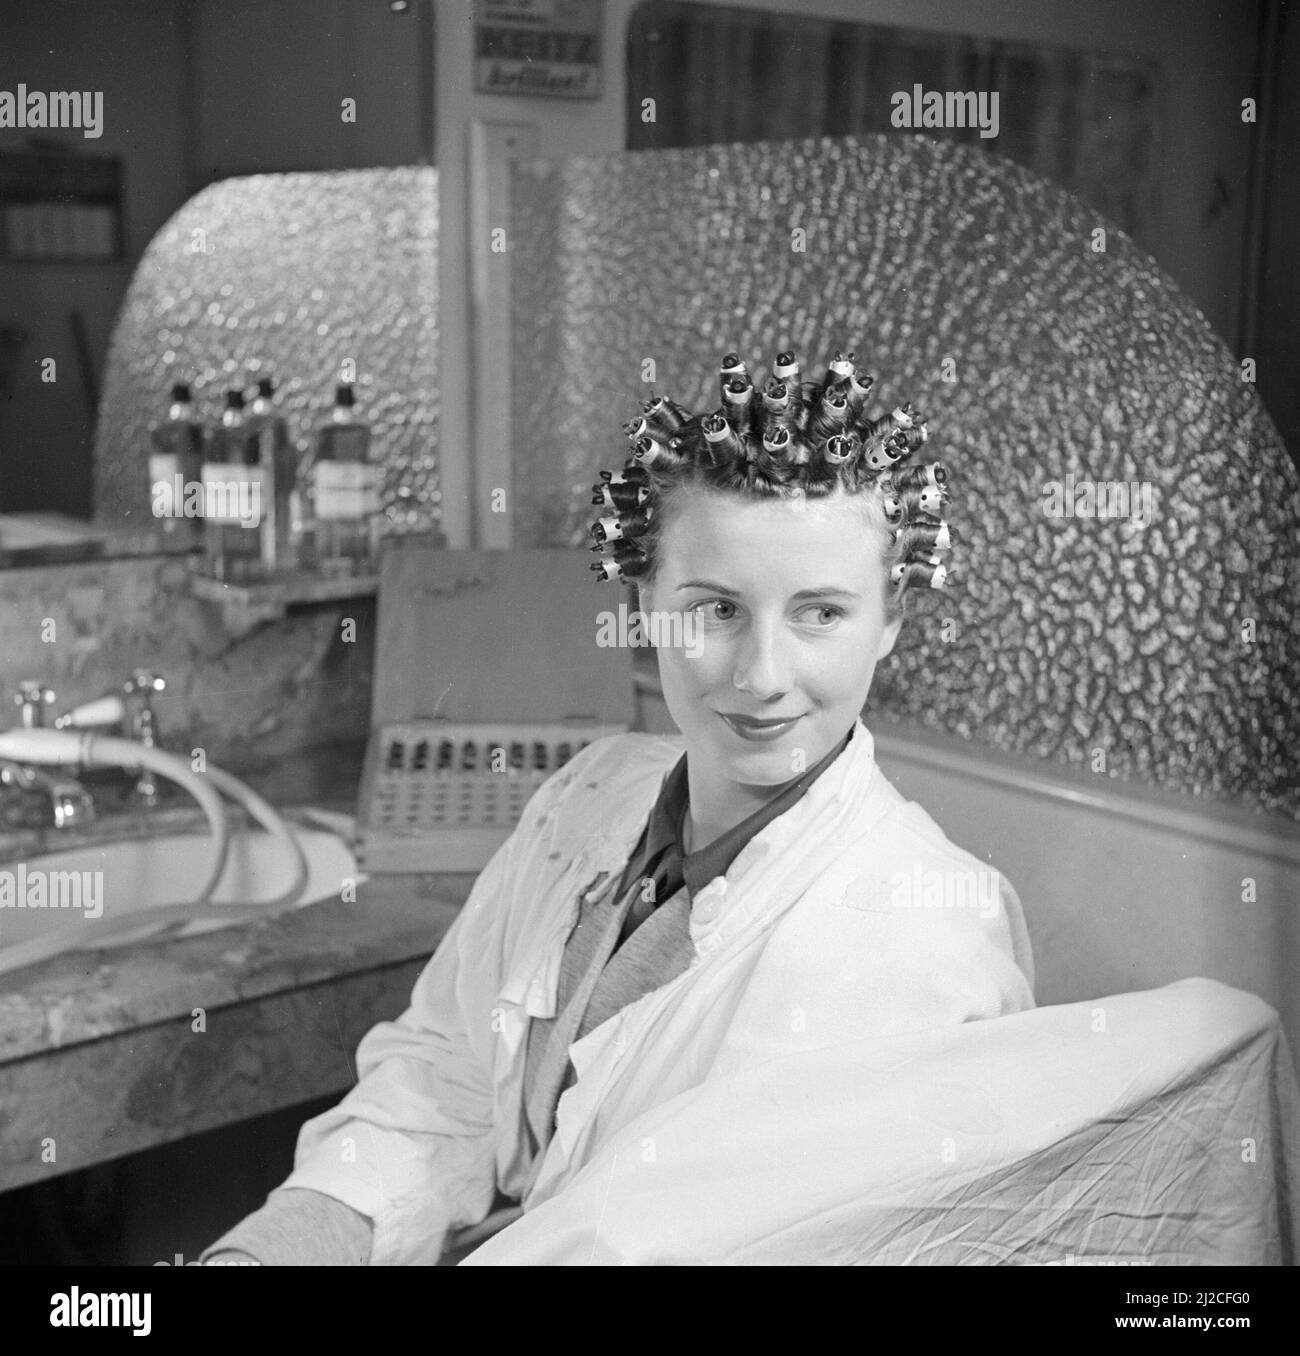 Femme assise dans une chaise dans un salon de coiffure ou salon de beauté ca. 1950 Banque D'Images